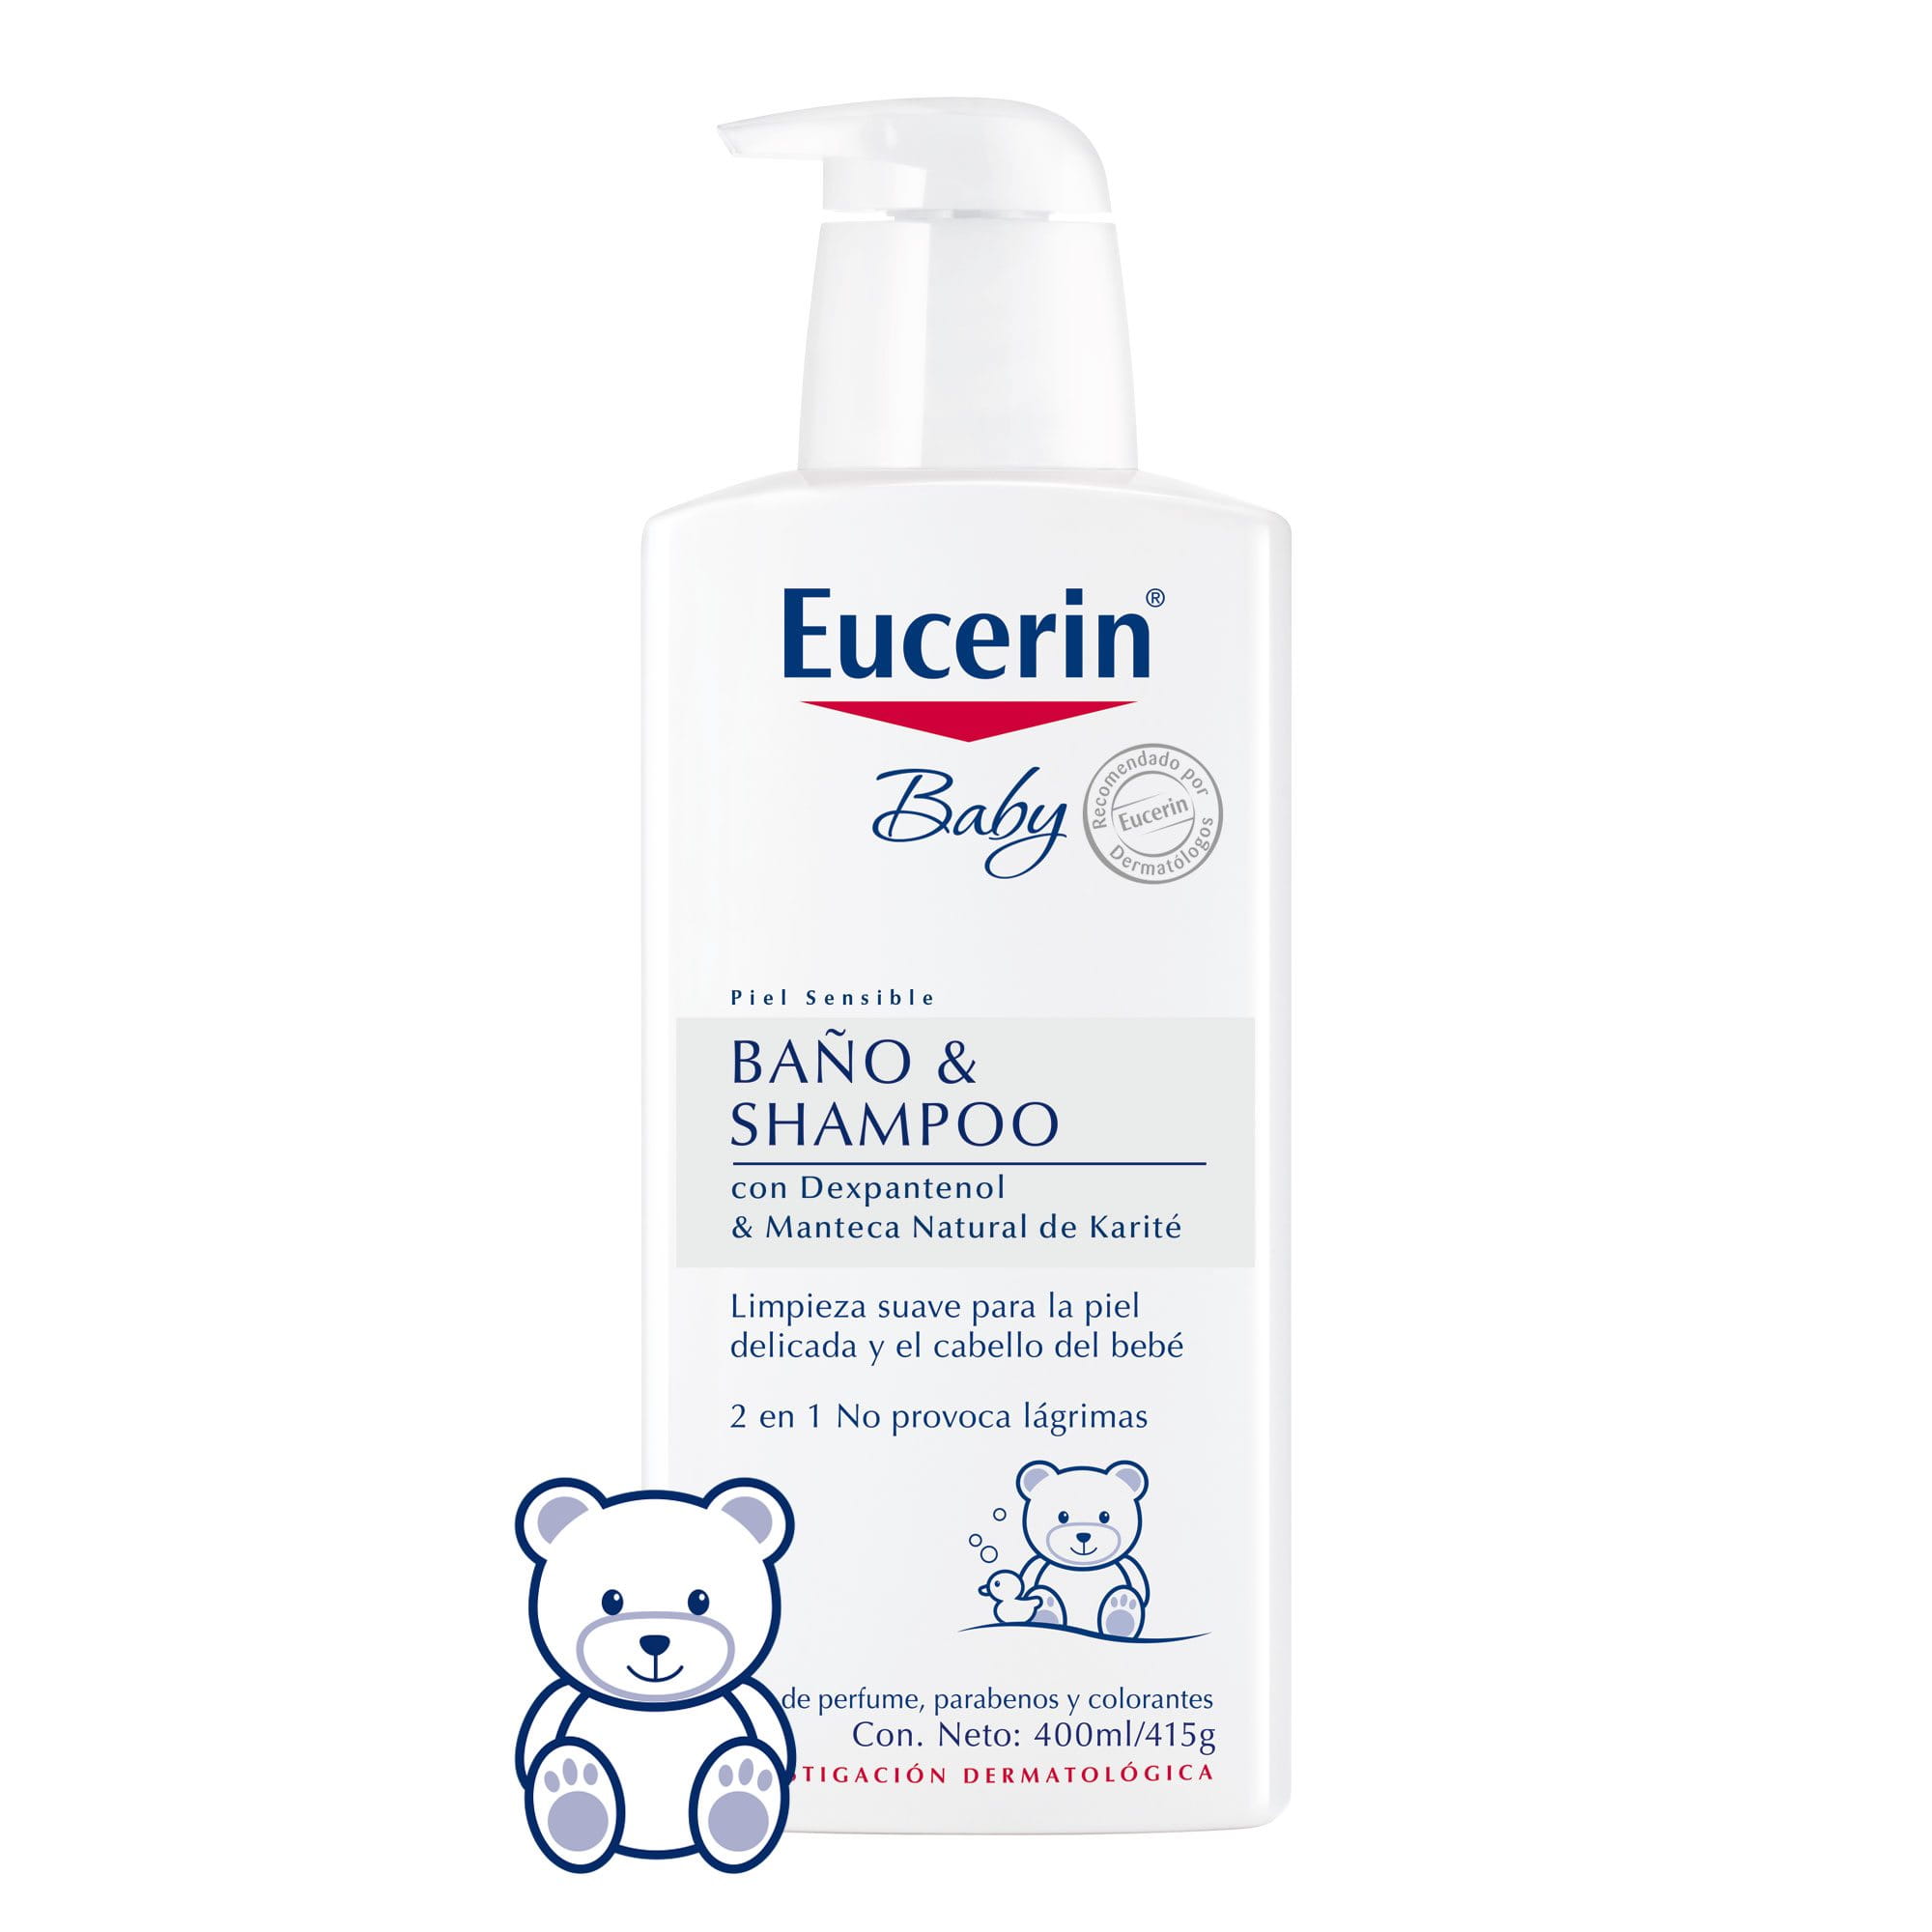 Eucerin Baby Baño & Shampoo